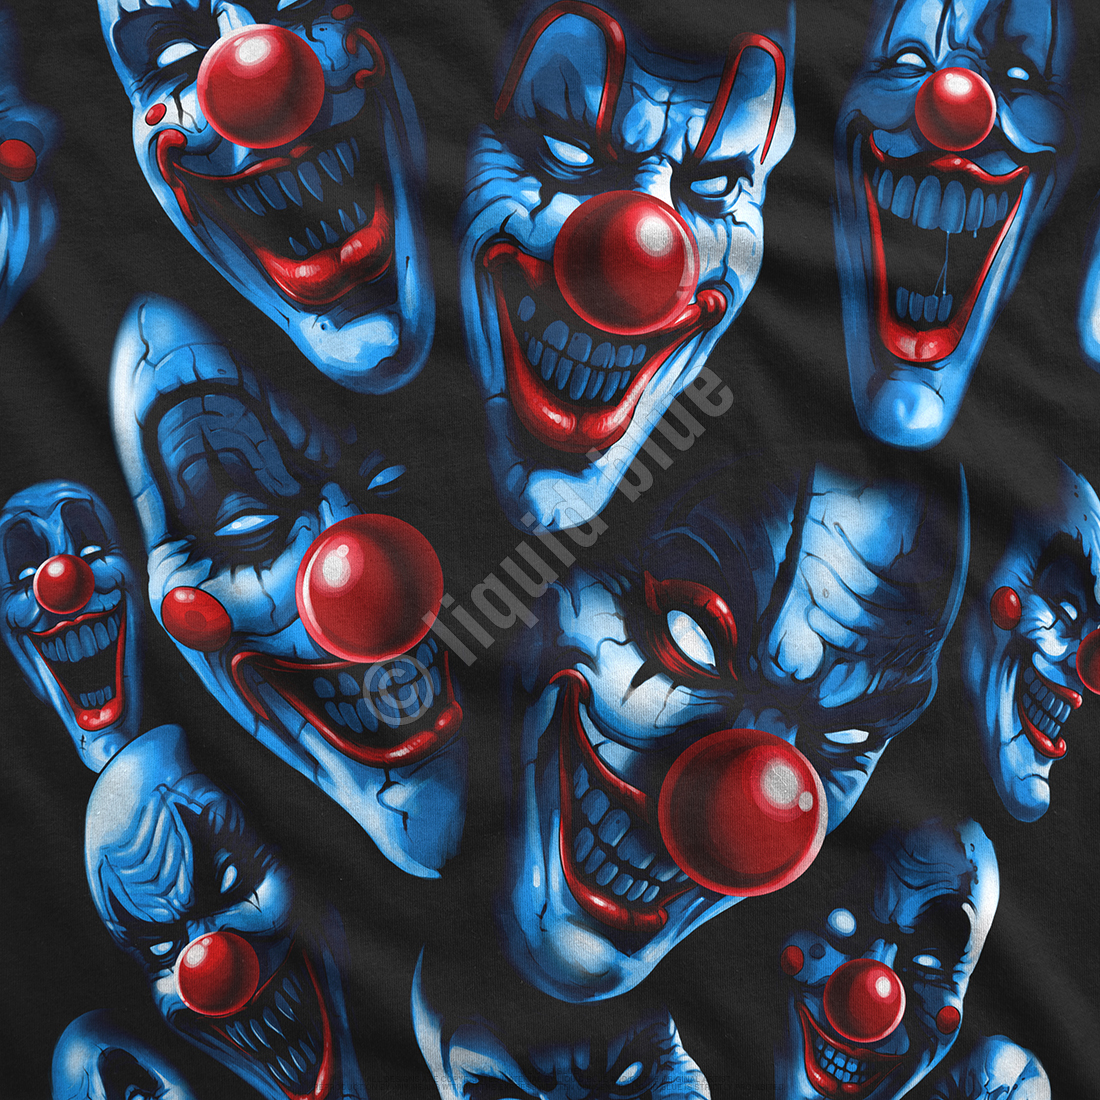 All  Over Clowns Dark Fantasy T-shirt